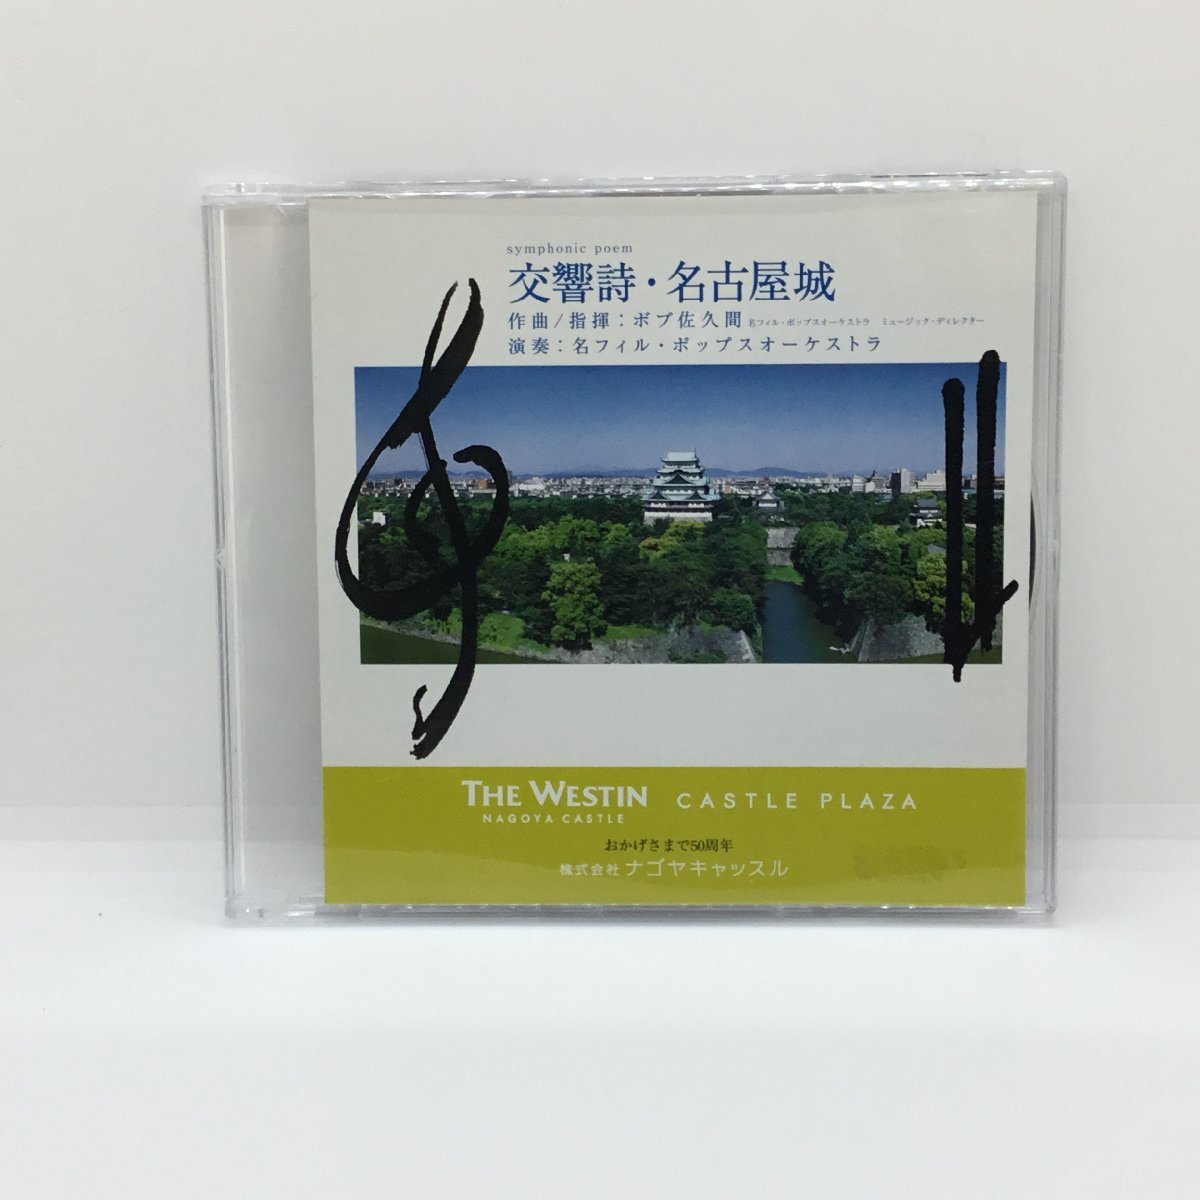 ボブ佐久間、 名フィル・ポップスオーケストラ / 交響詩・名古屋城 (CD) ナゴヤキャッスル CASTLE PLAZA THE WESTIN NAGOYA CASTLE_画像1